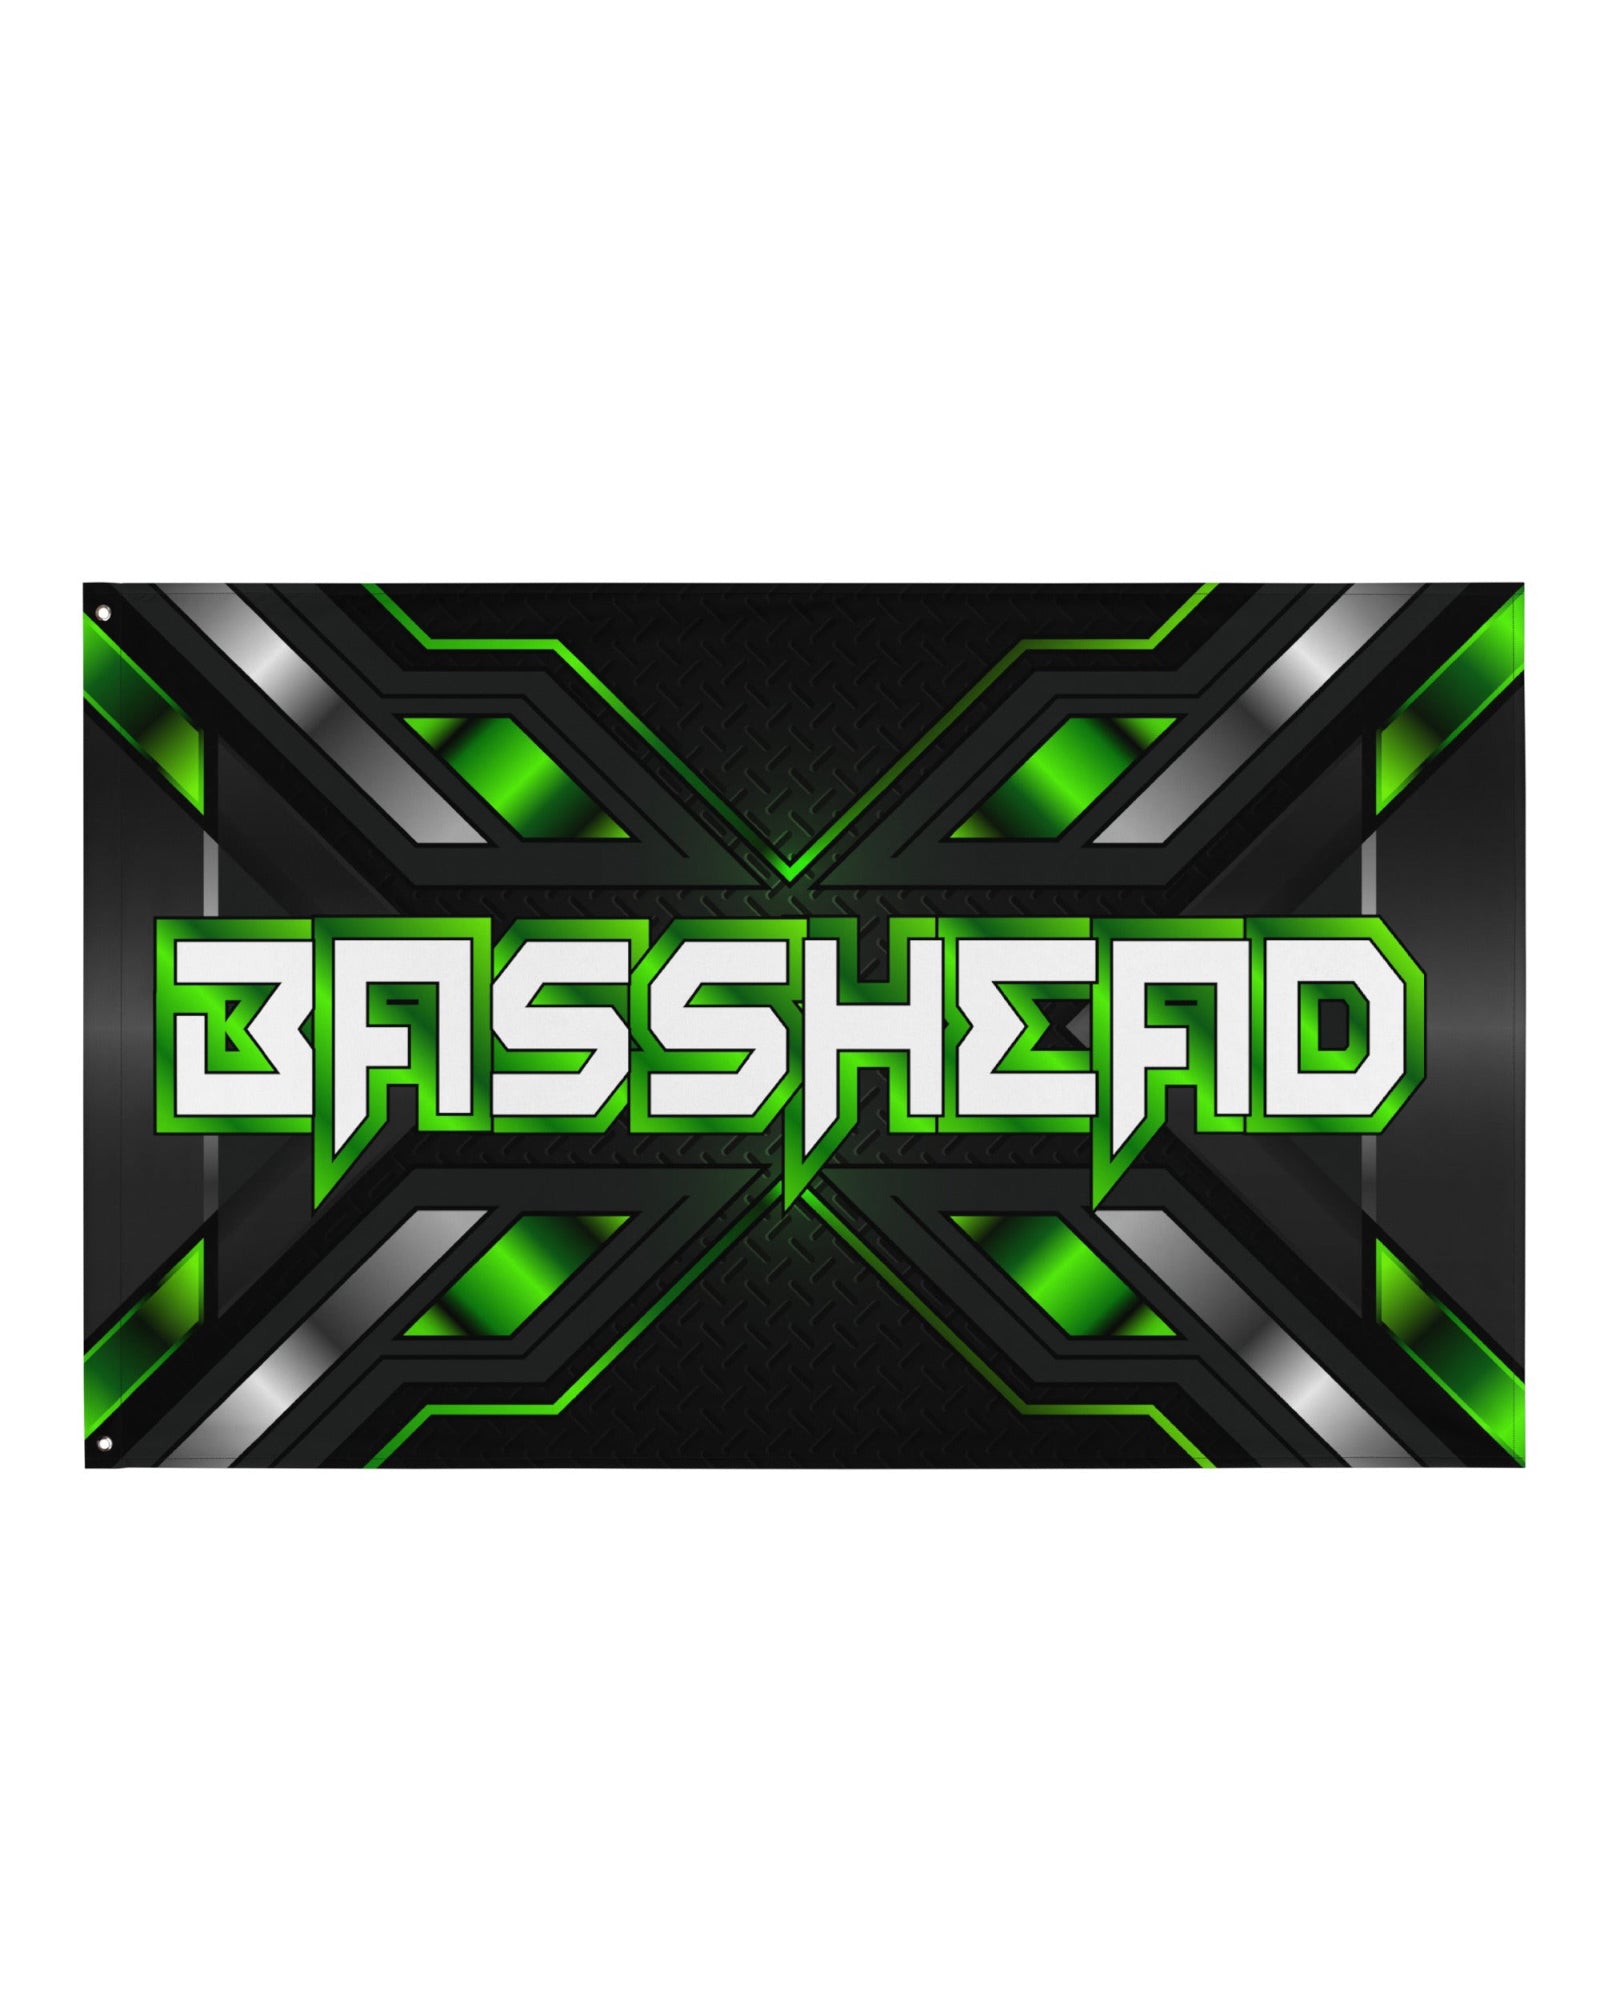 Basshead Rave Flag